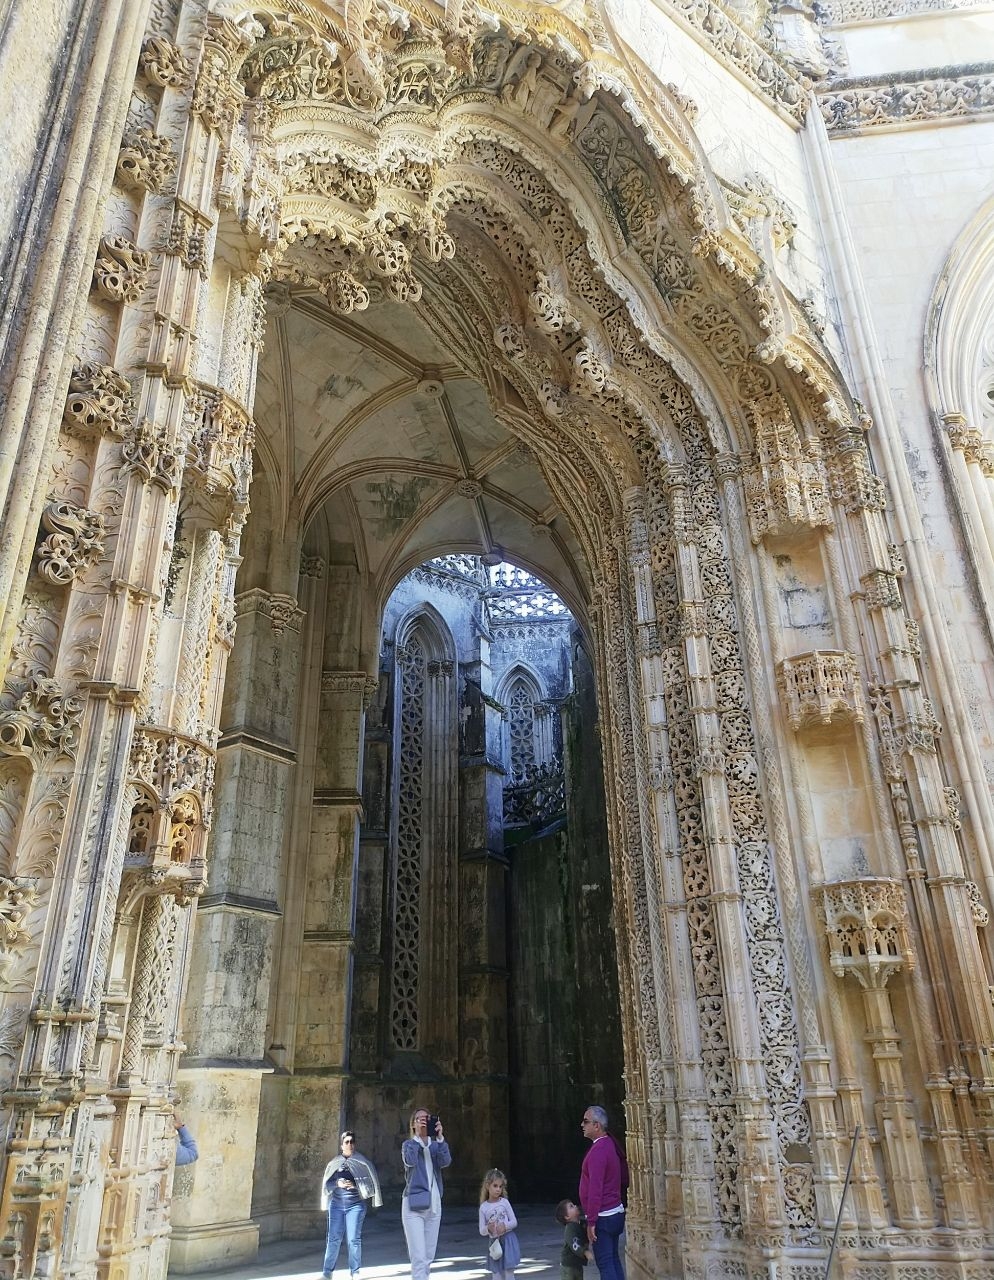 Монастырь Санта-Мария да Виктория (Баталья) Баталья, Португалия